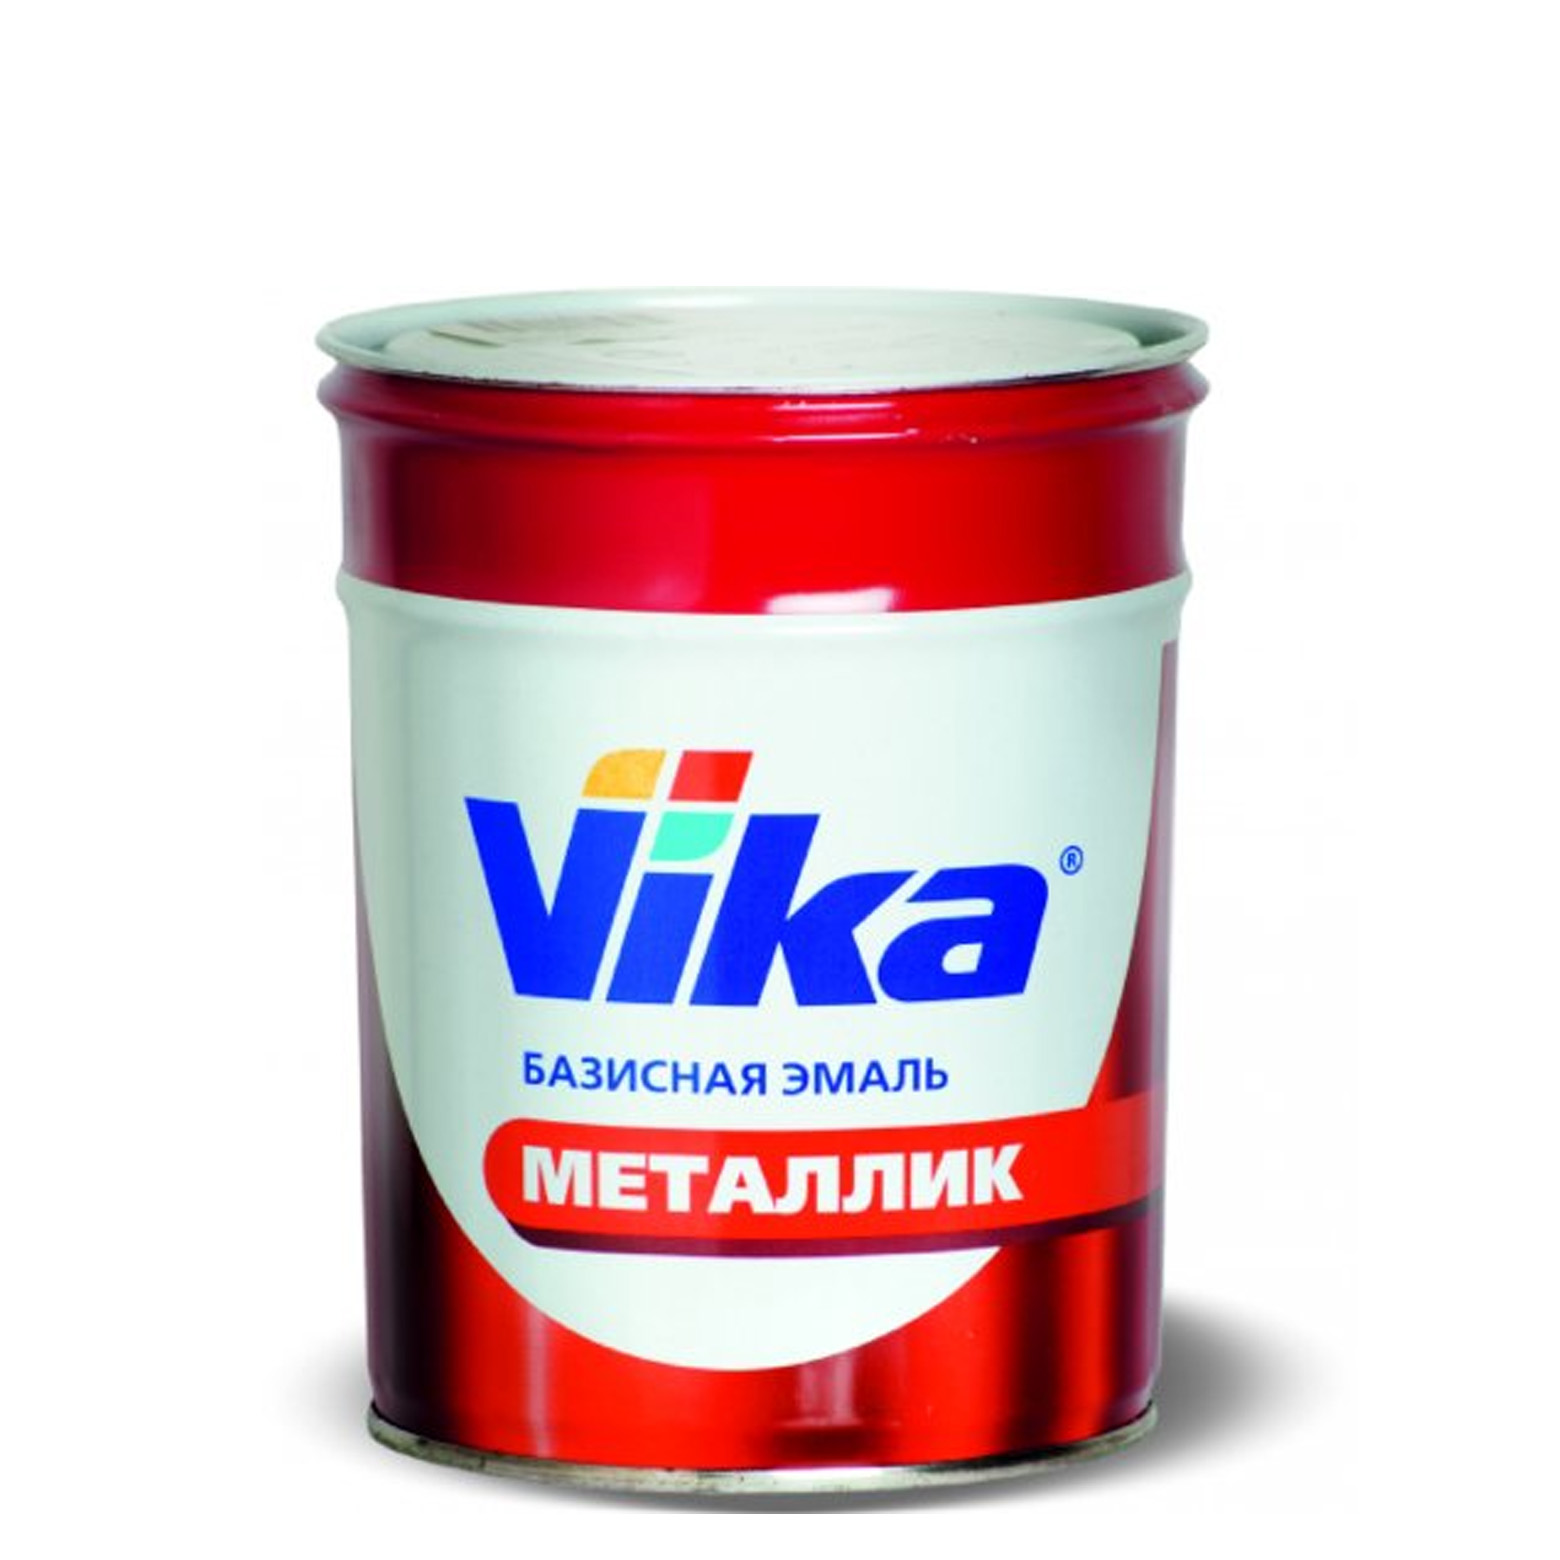 Фото 1 - Автоэмаль Металлик, цвет марс Лада Веста CW, профессиональная базовая, - 0,9 кг Vika/Вика.